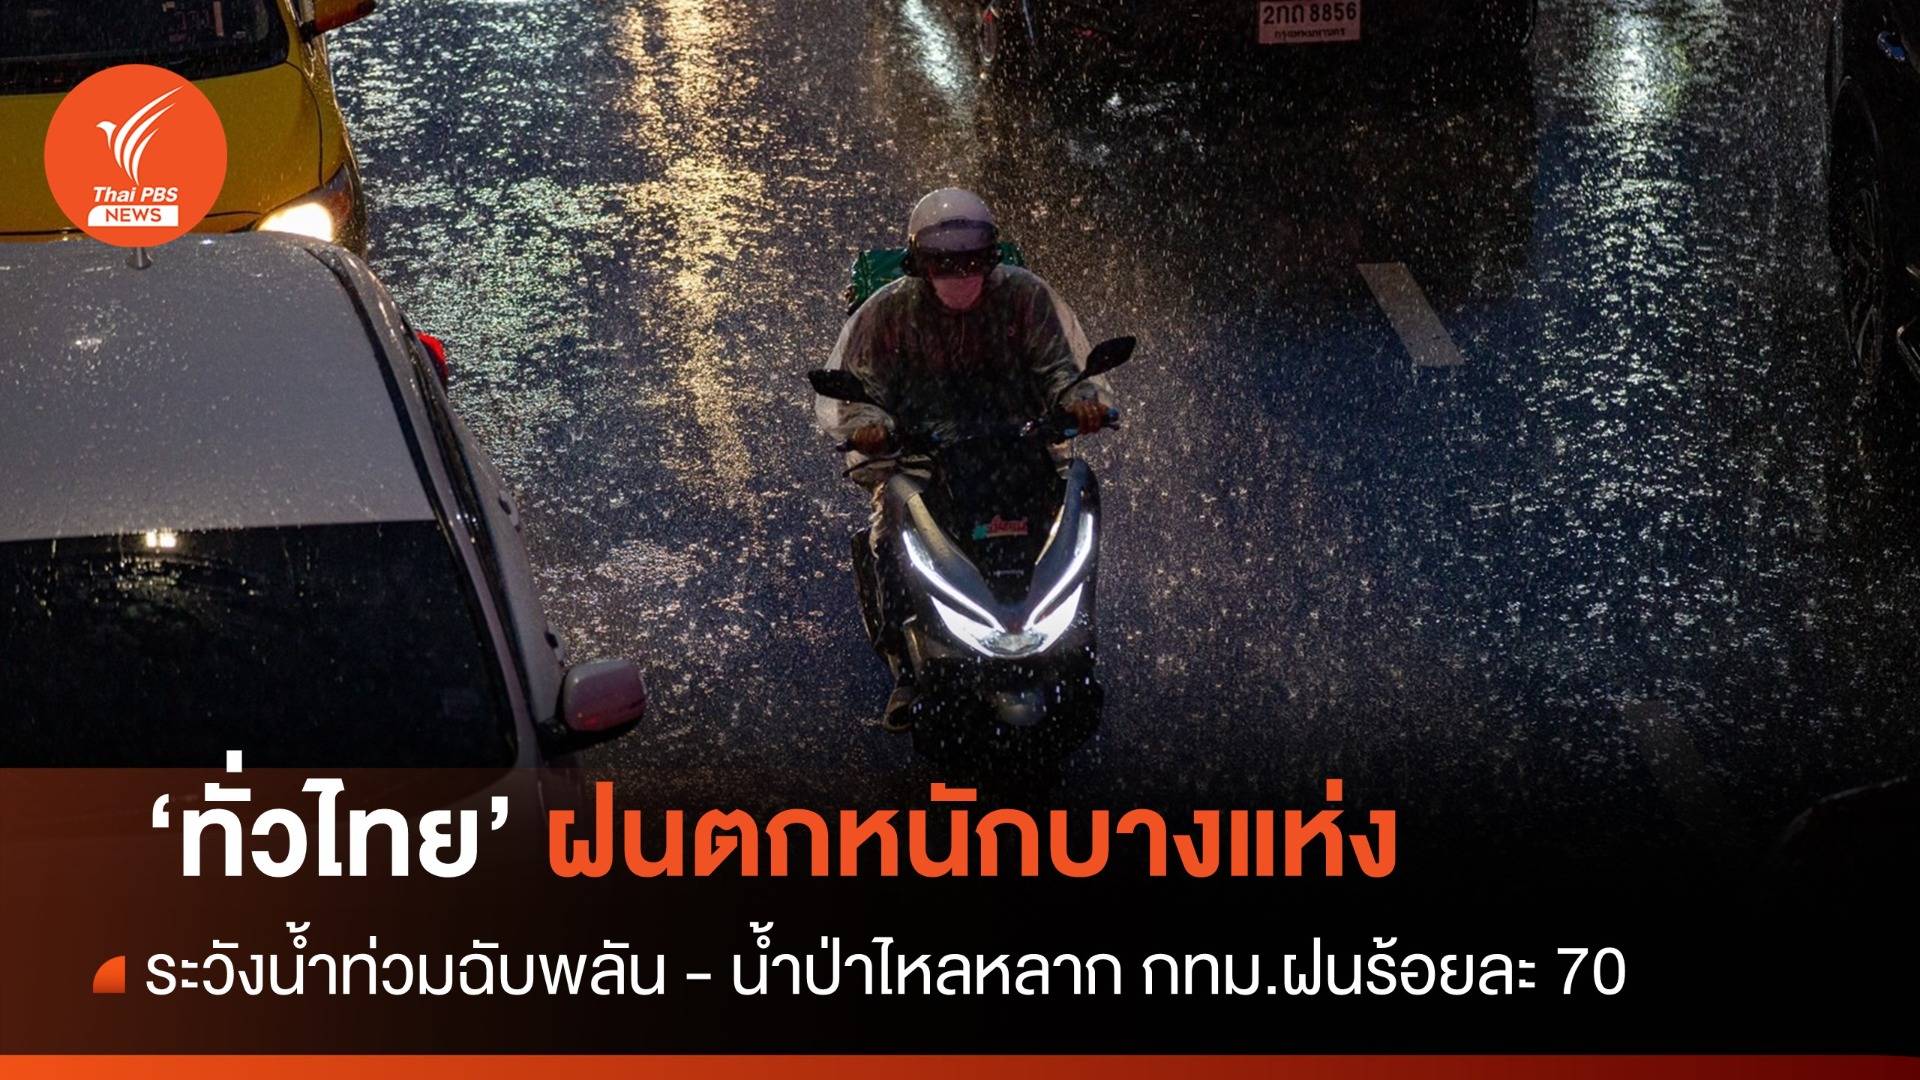 สภาพอากาศวันนี้ ทั่วไทยฝนตกหนักบางแห่ง ระวังน้ำท่วมฉับพลัน - กทม.ฝนฟ้าคะนอง ร้อยละ 70 ของพื้นที่